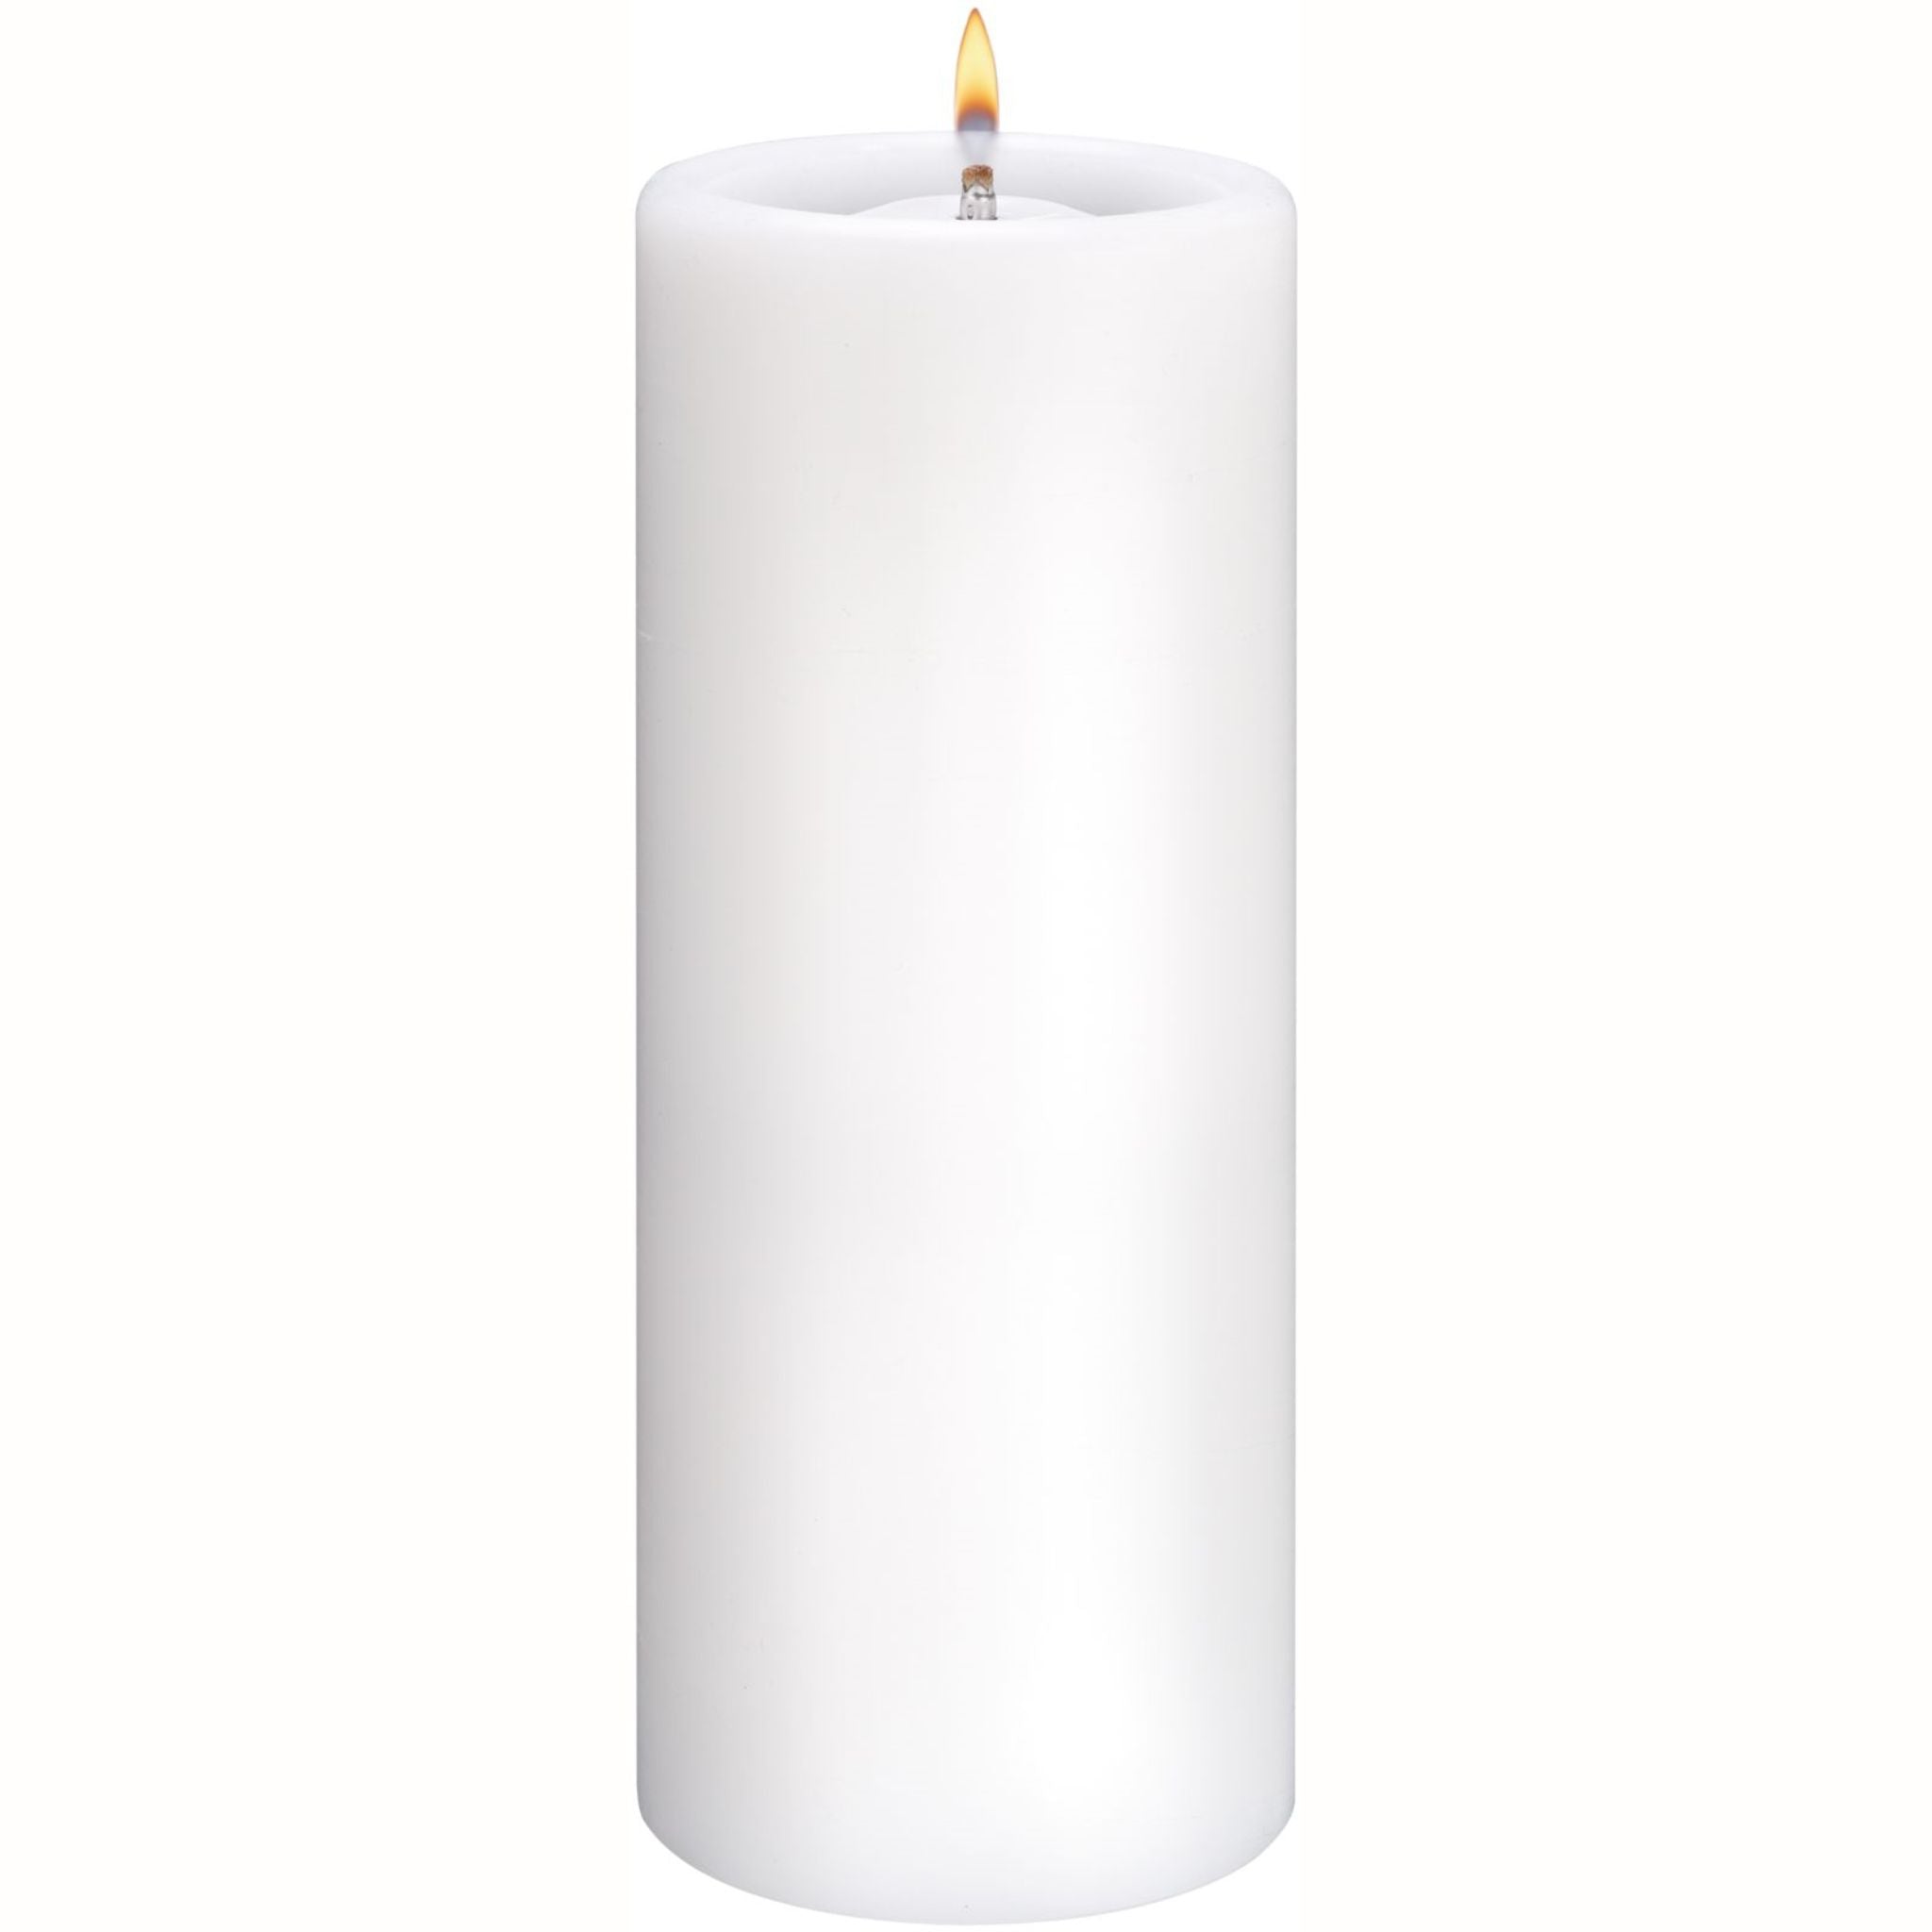 Safety candle for eternal burner 40AL - 0